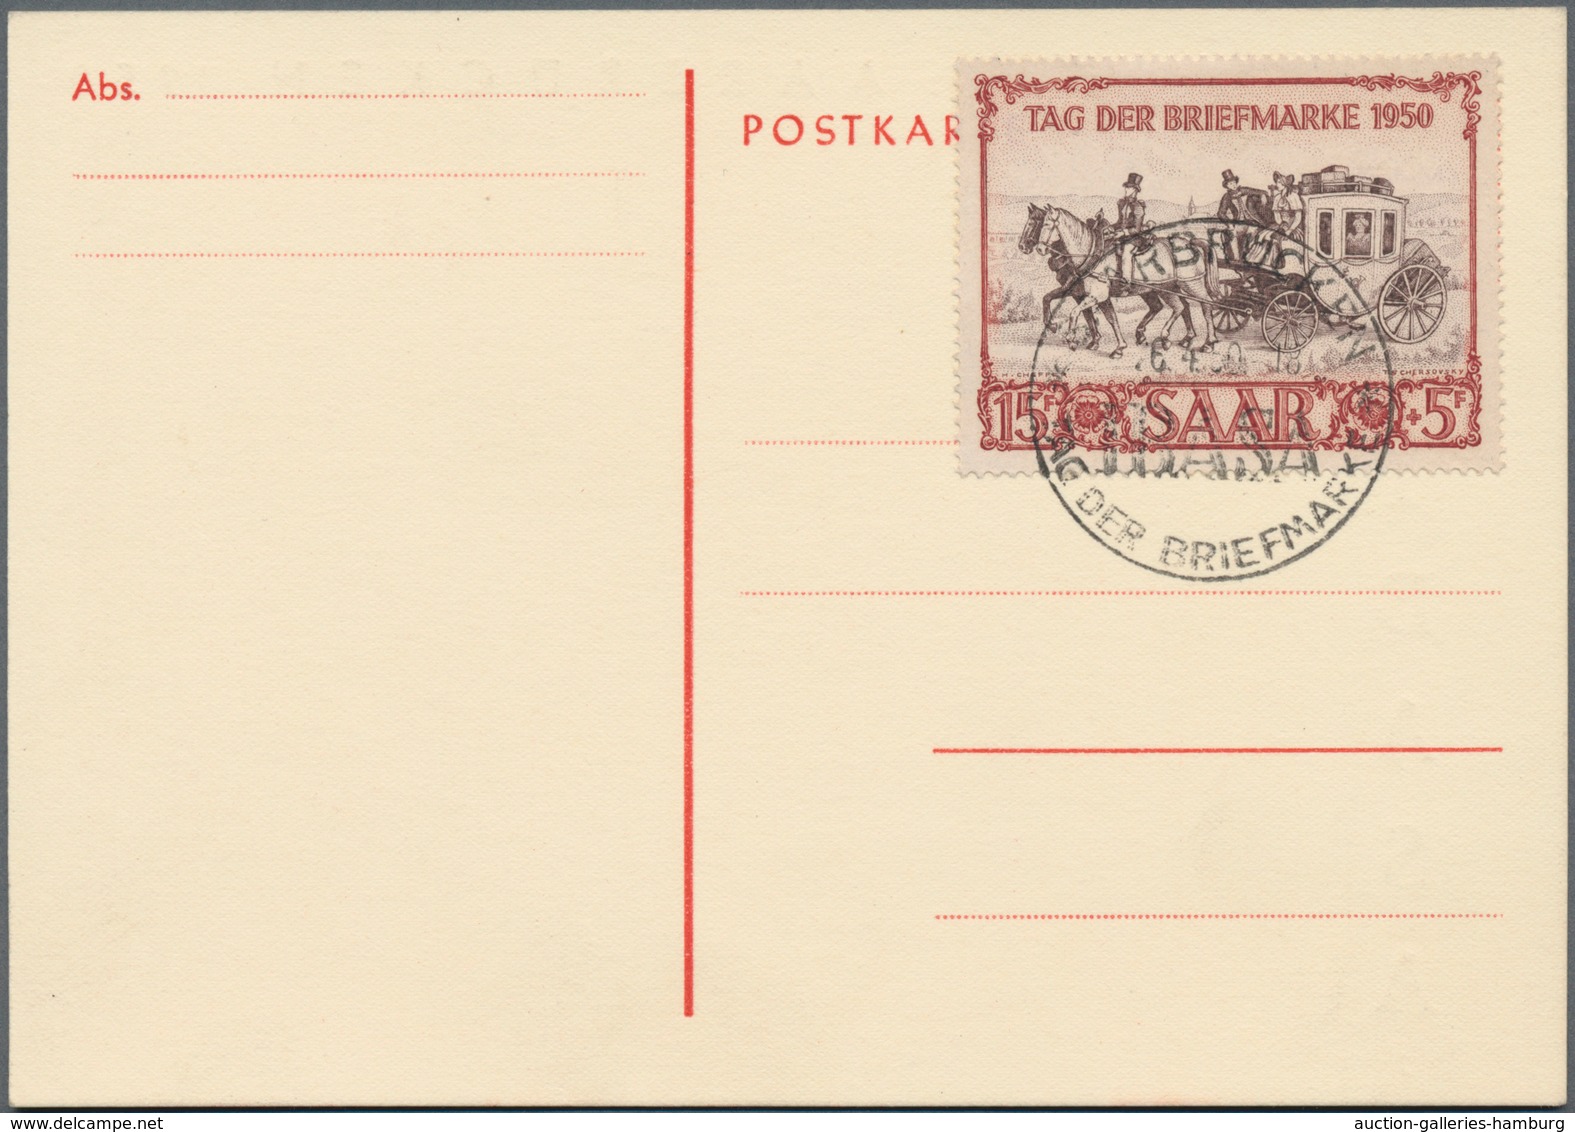 Saarland (1947/56): 1949/1950, 15+5 Fr "IBASA" auf Maxikarte mit Befund Schlegel und auf Brief mit 2